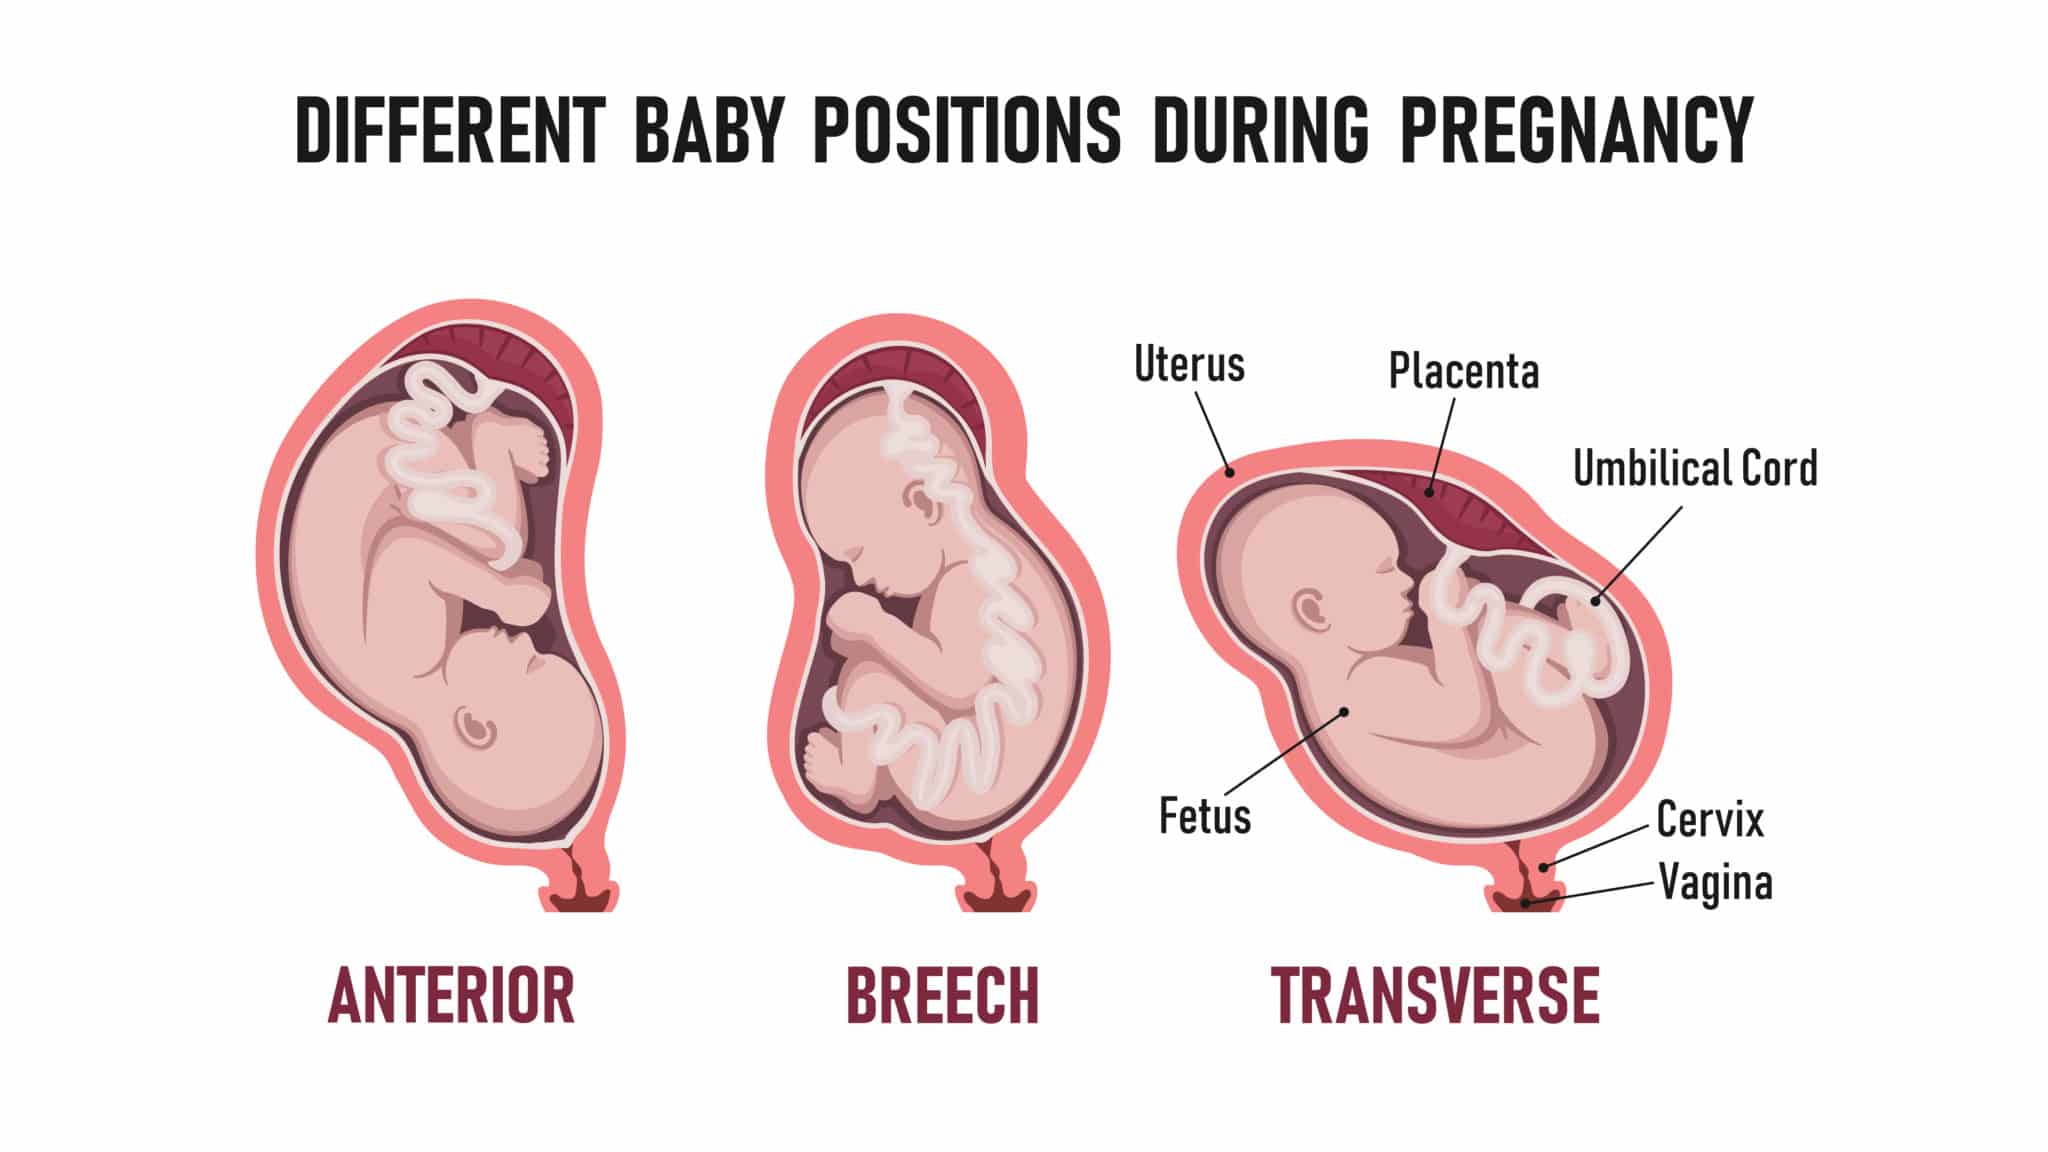 transverse presentation of fetus